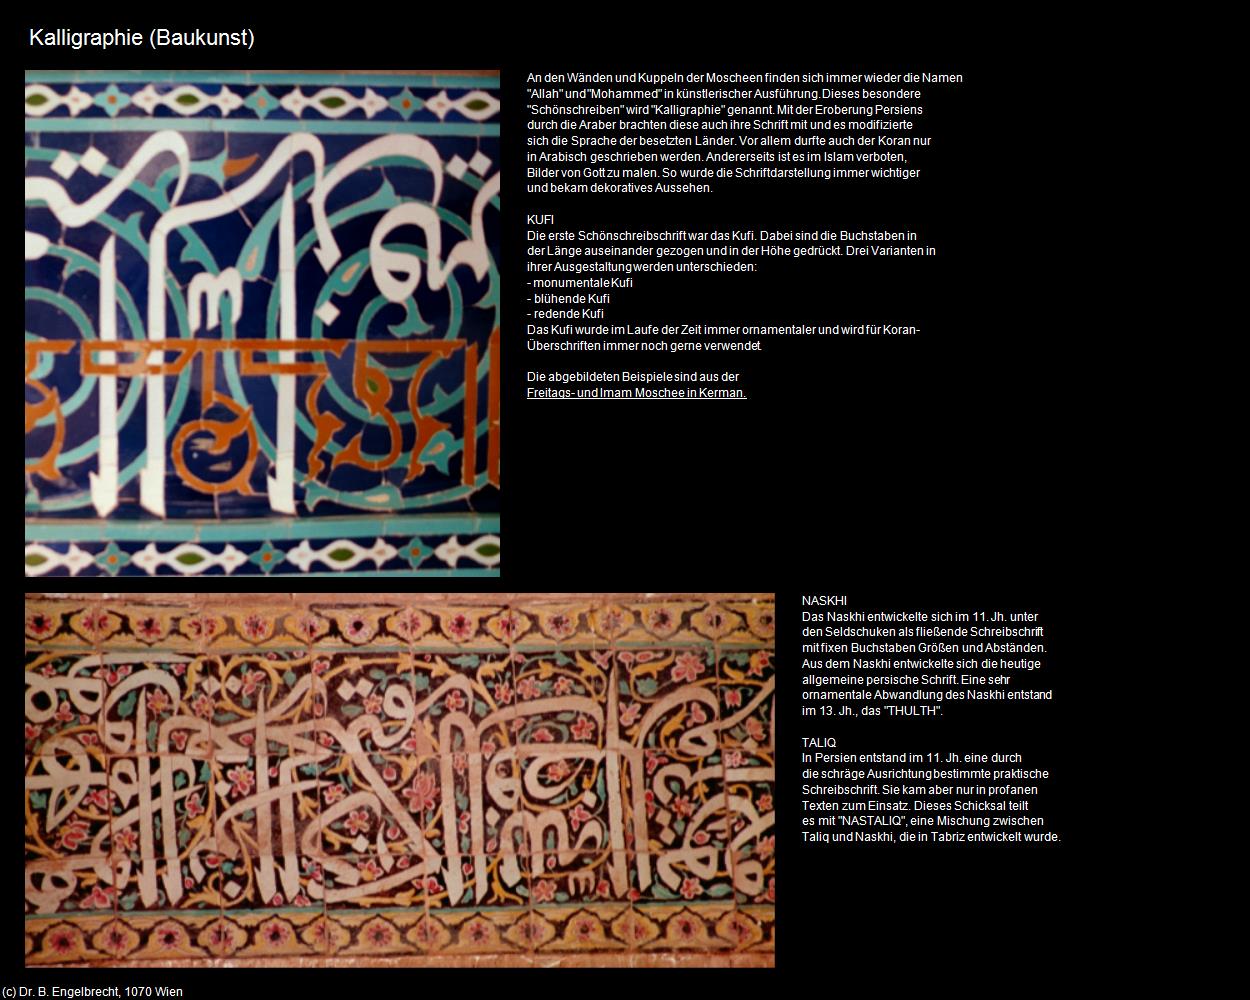 Kalligraphie (IRAN-Baukunst) in Iran(c)B.Engelbrecht